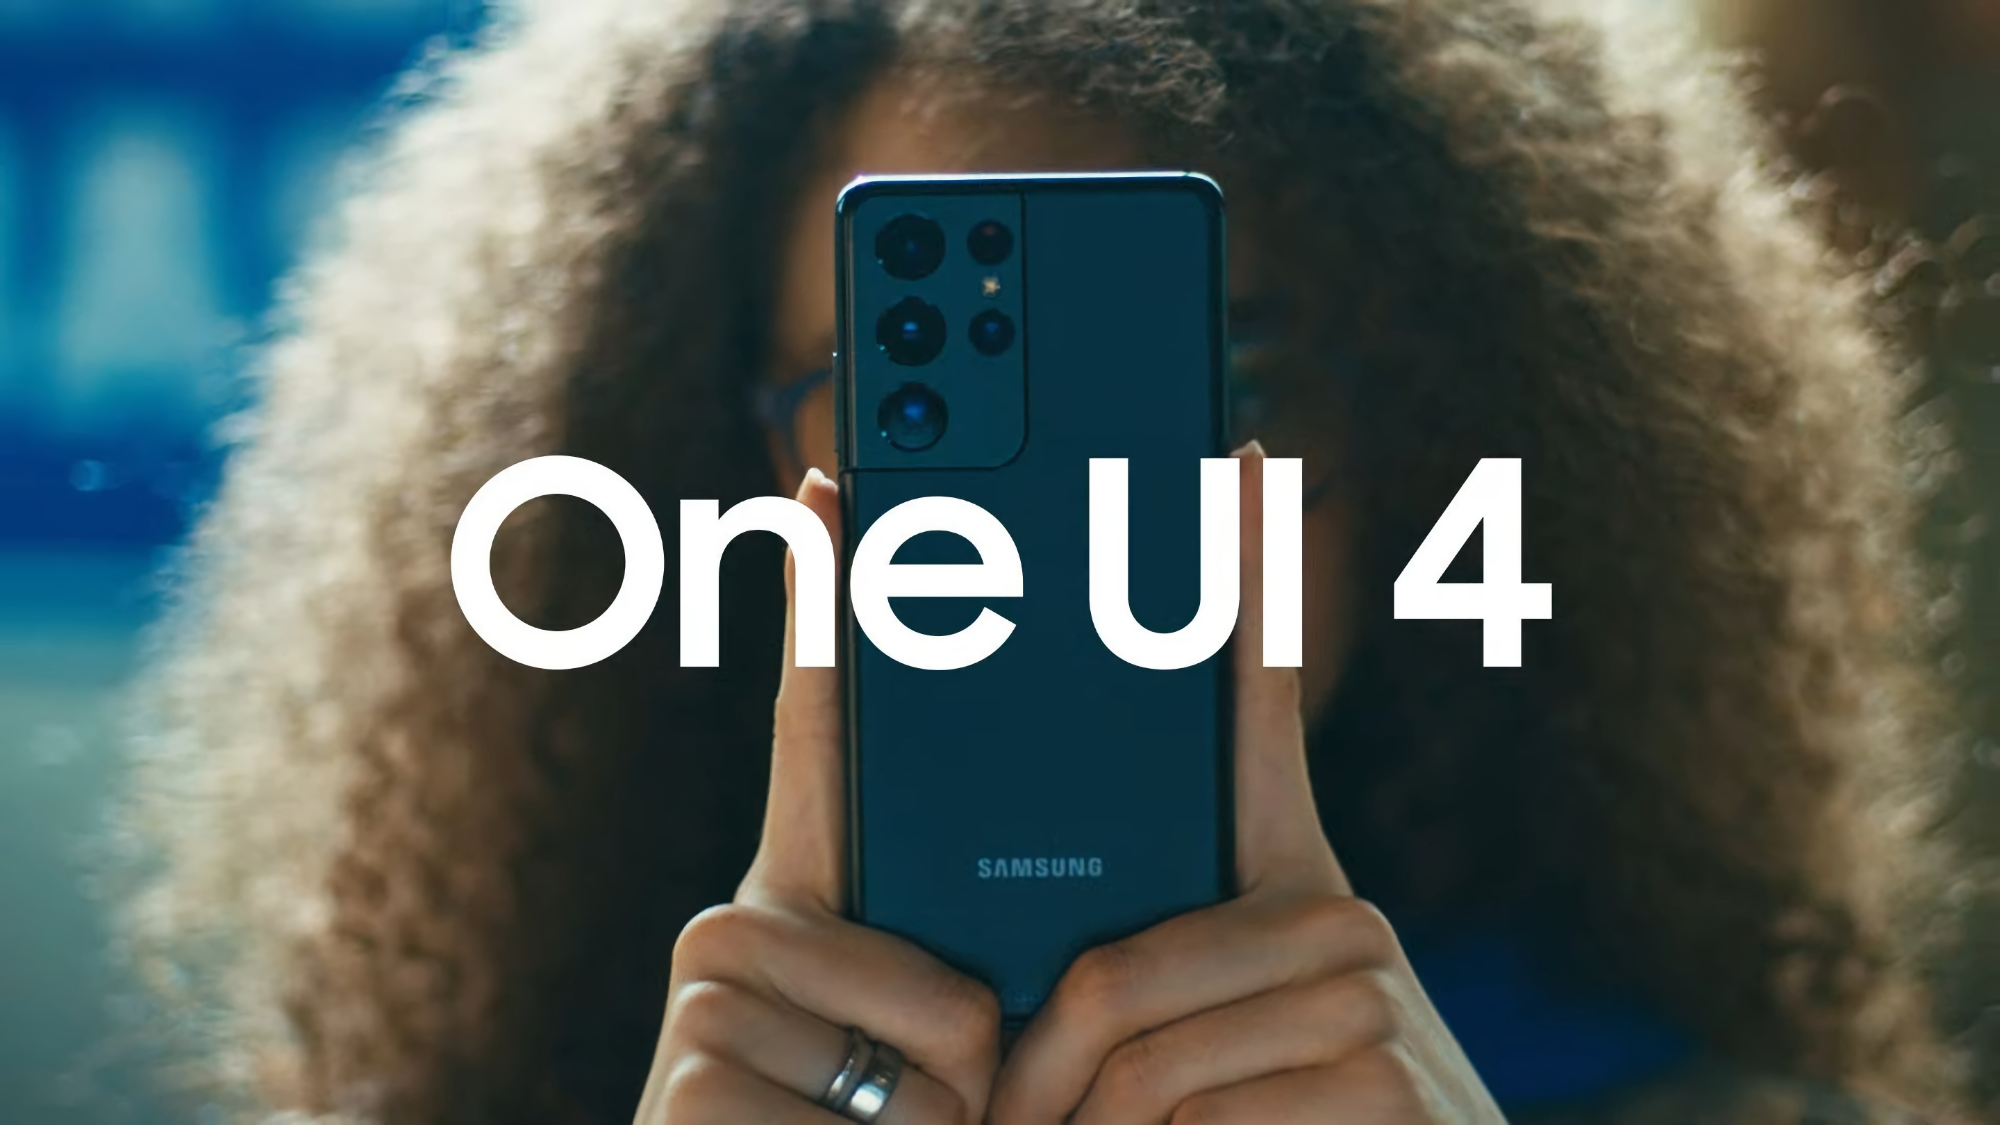 Чотири флагмани Samsung 2019 року отримали оболонку One UI 4.0 на базі Android 12